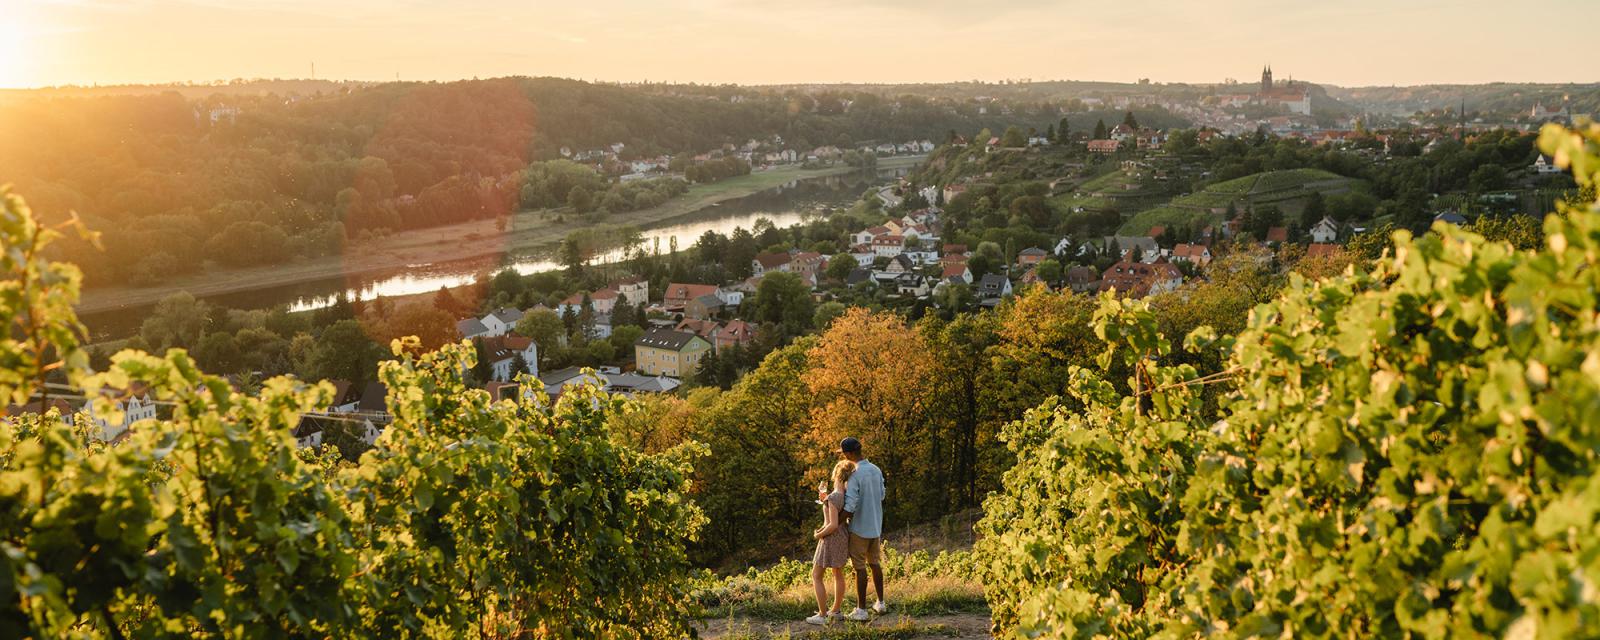 Ontdek alles over Duitse wijn in Dresden en rond de Elbe 